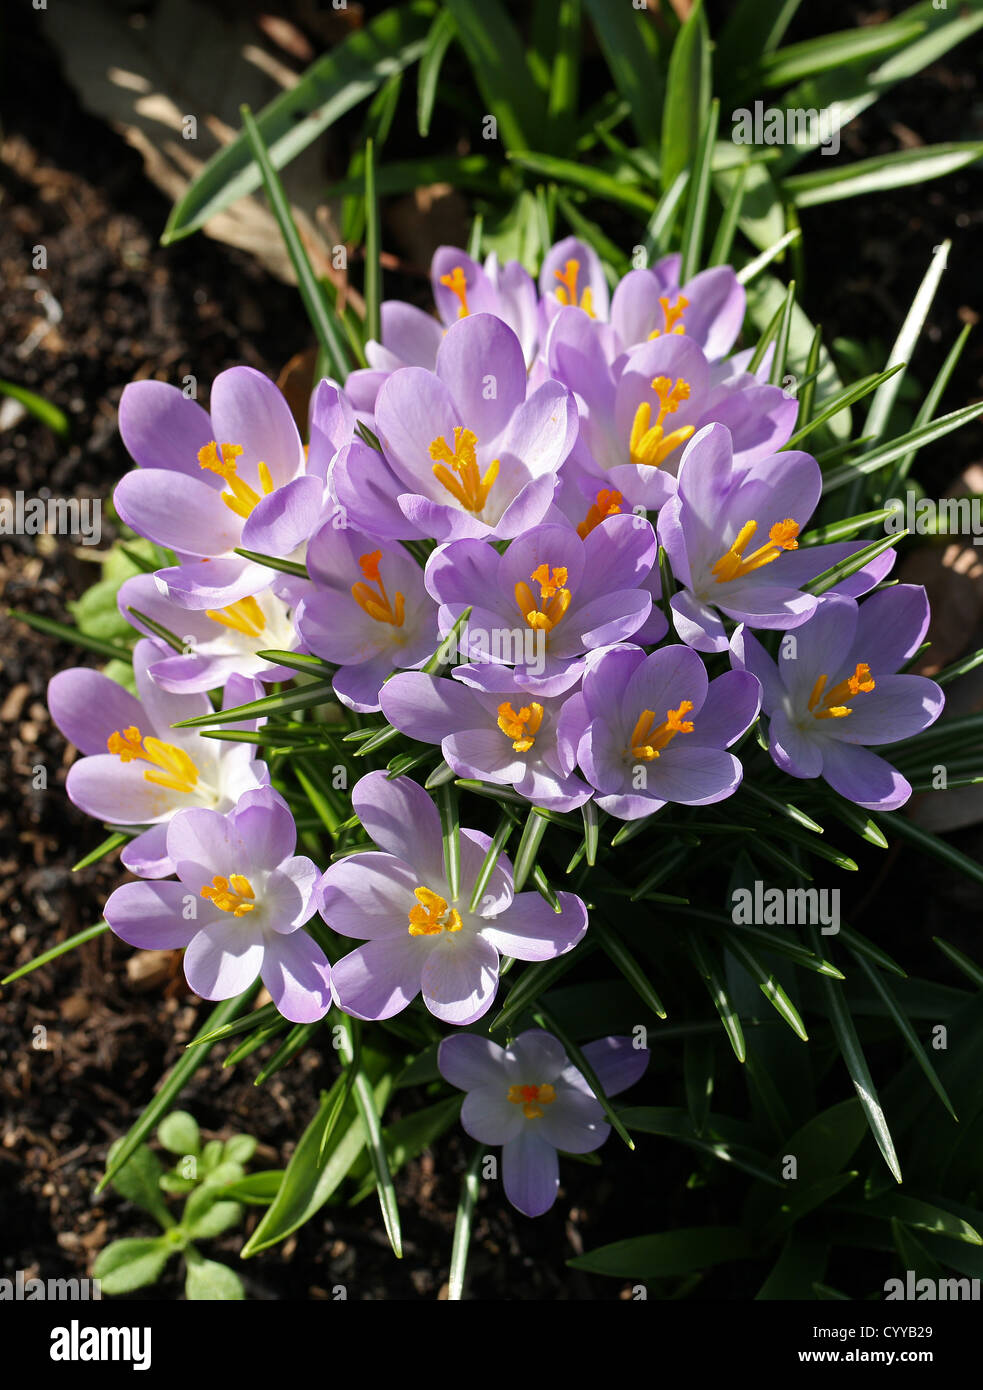 Spring Crocuses, Crocus vernus, Iridaceae.  European Spring flowering bulbs. Stock Photo